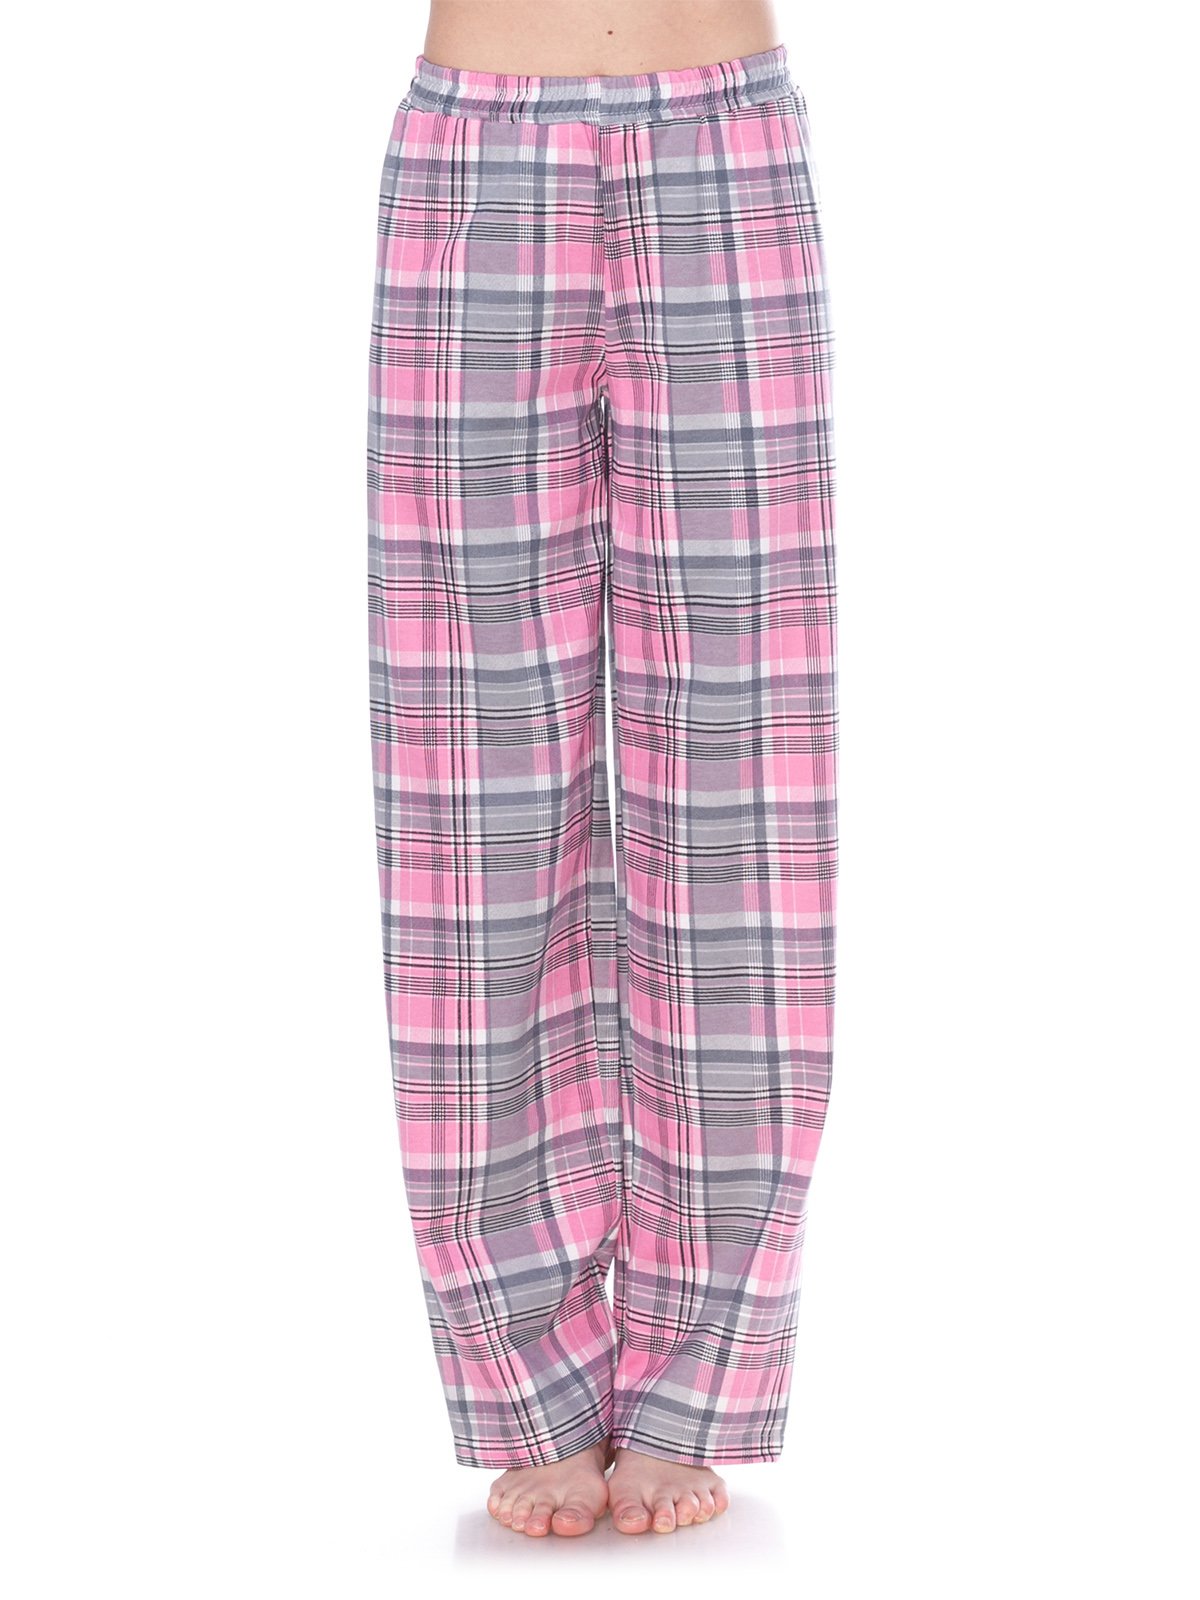 Брюки серо-розовые в клетку пижамные — Fleri, акция действует до 31 января2024 года